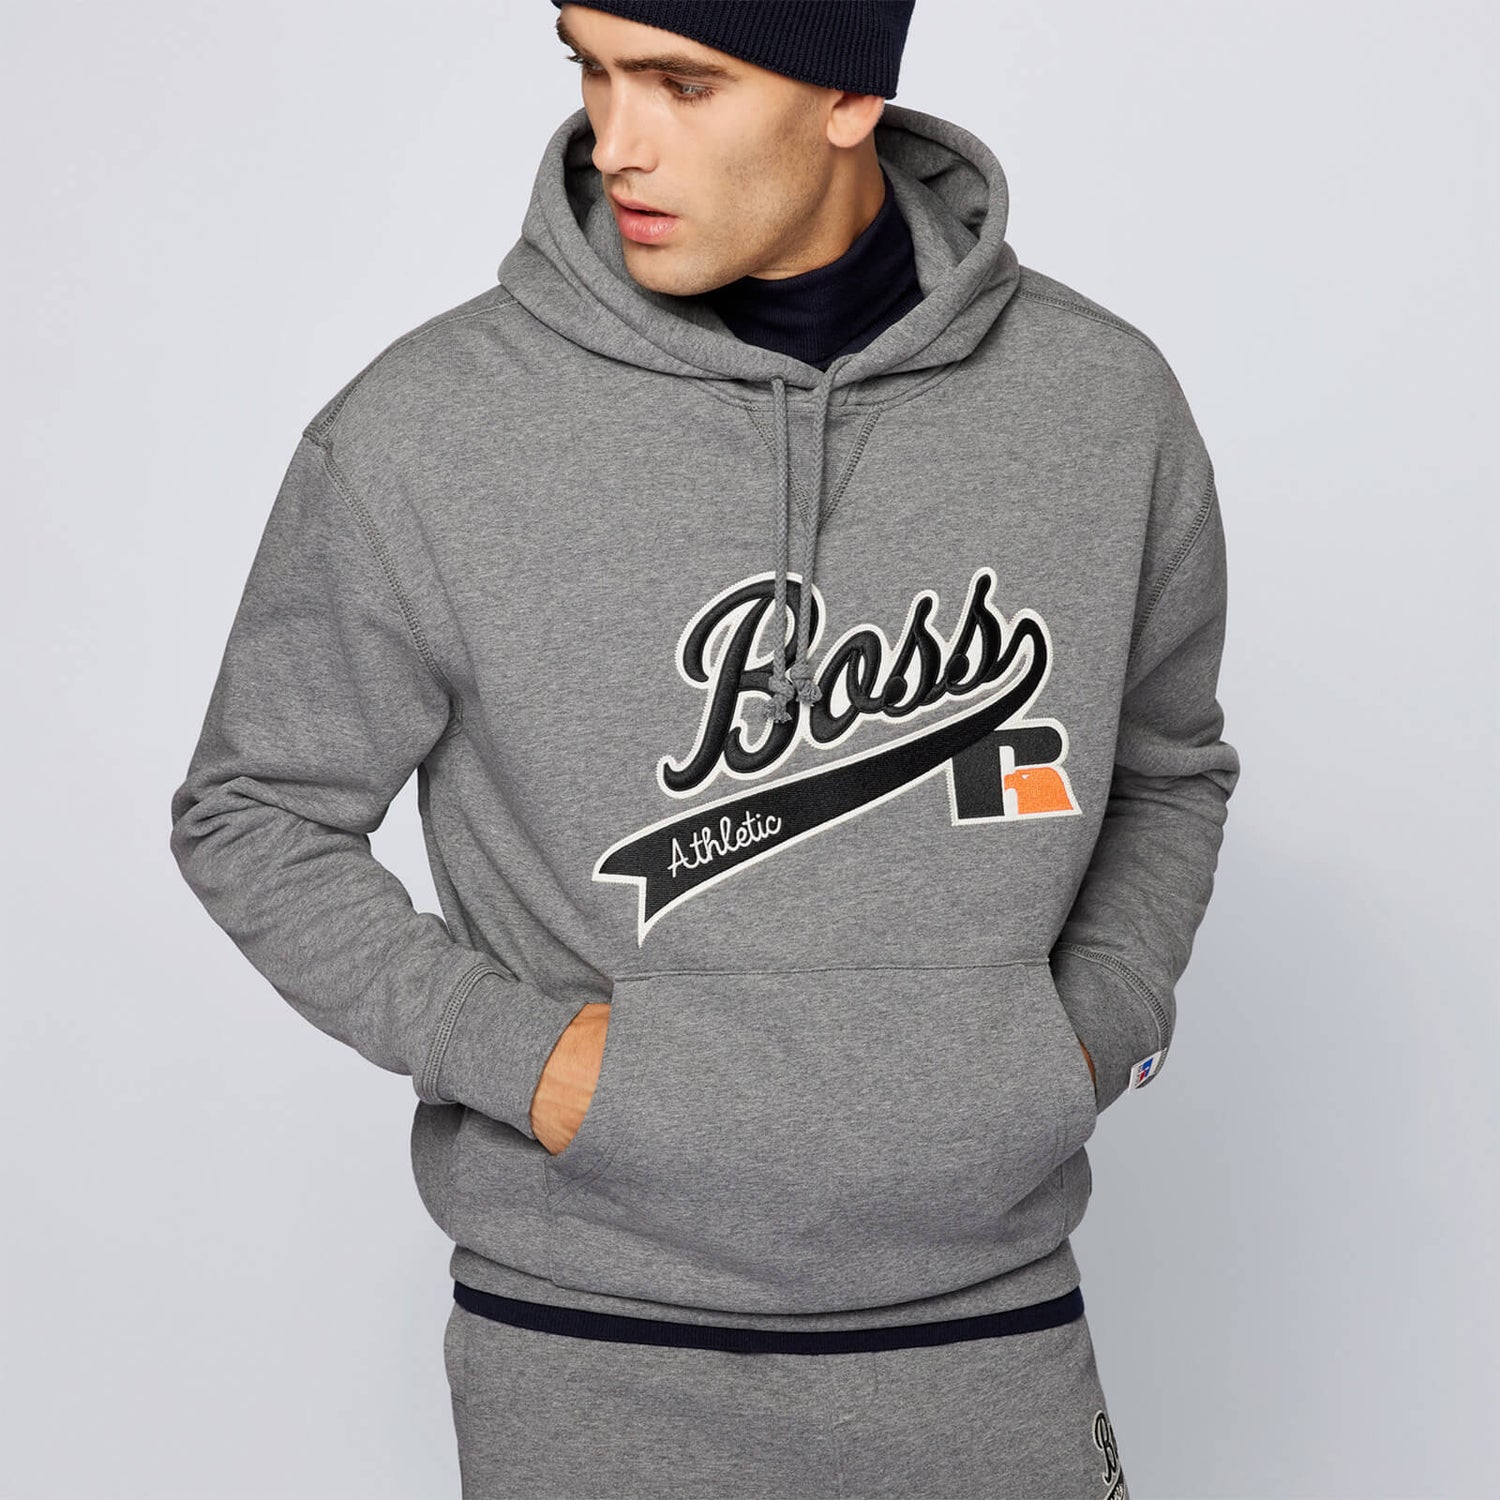 BOSS X Russell Athletic Men's Safa Pullover Hoodie - Medium Grey